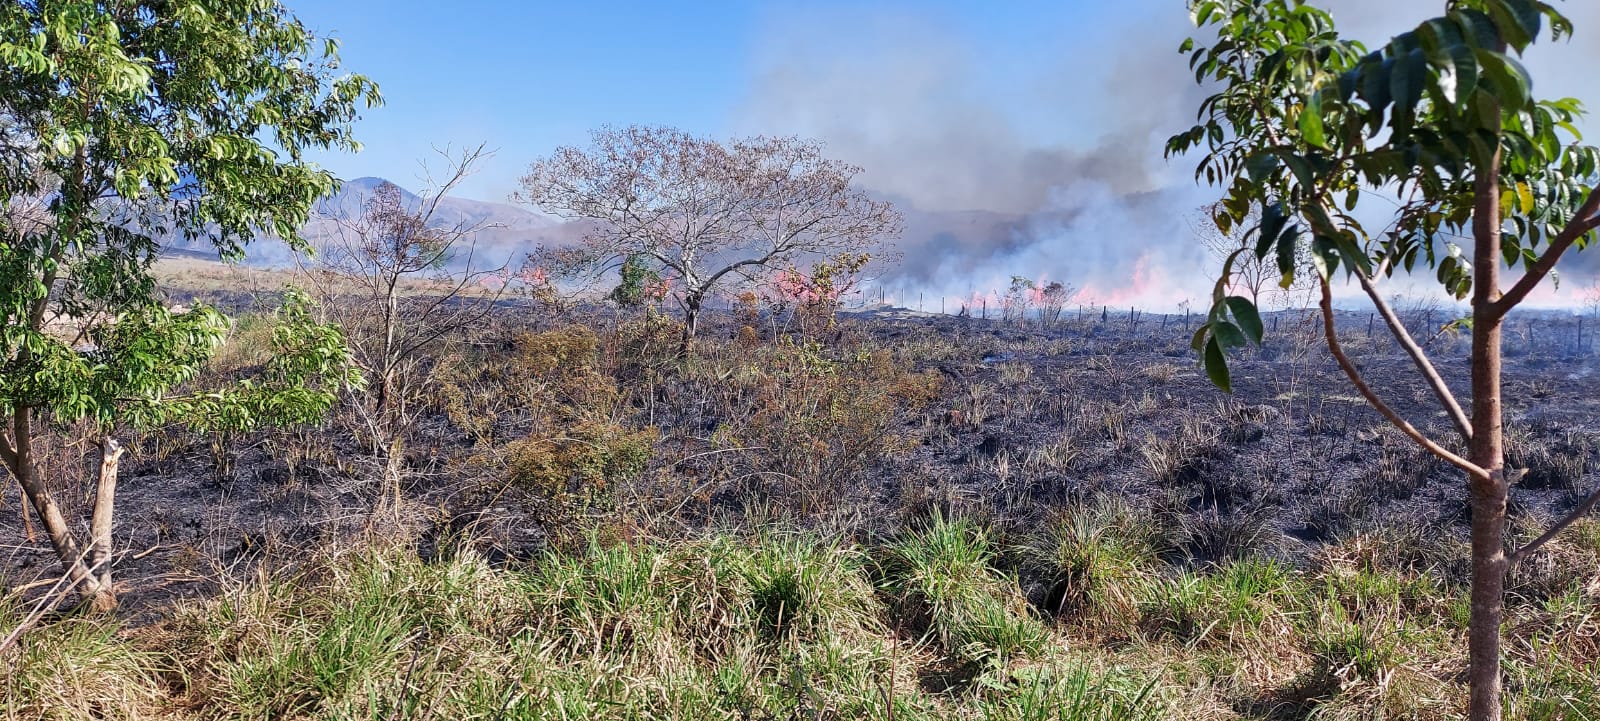  Incêndio em vegetação destruiu área equivalente a 20 campos de futebol em Apiacá